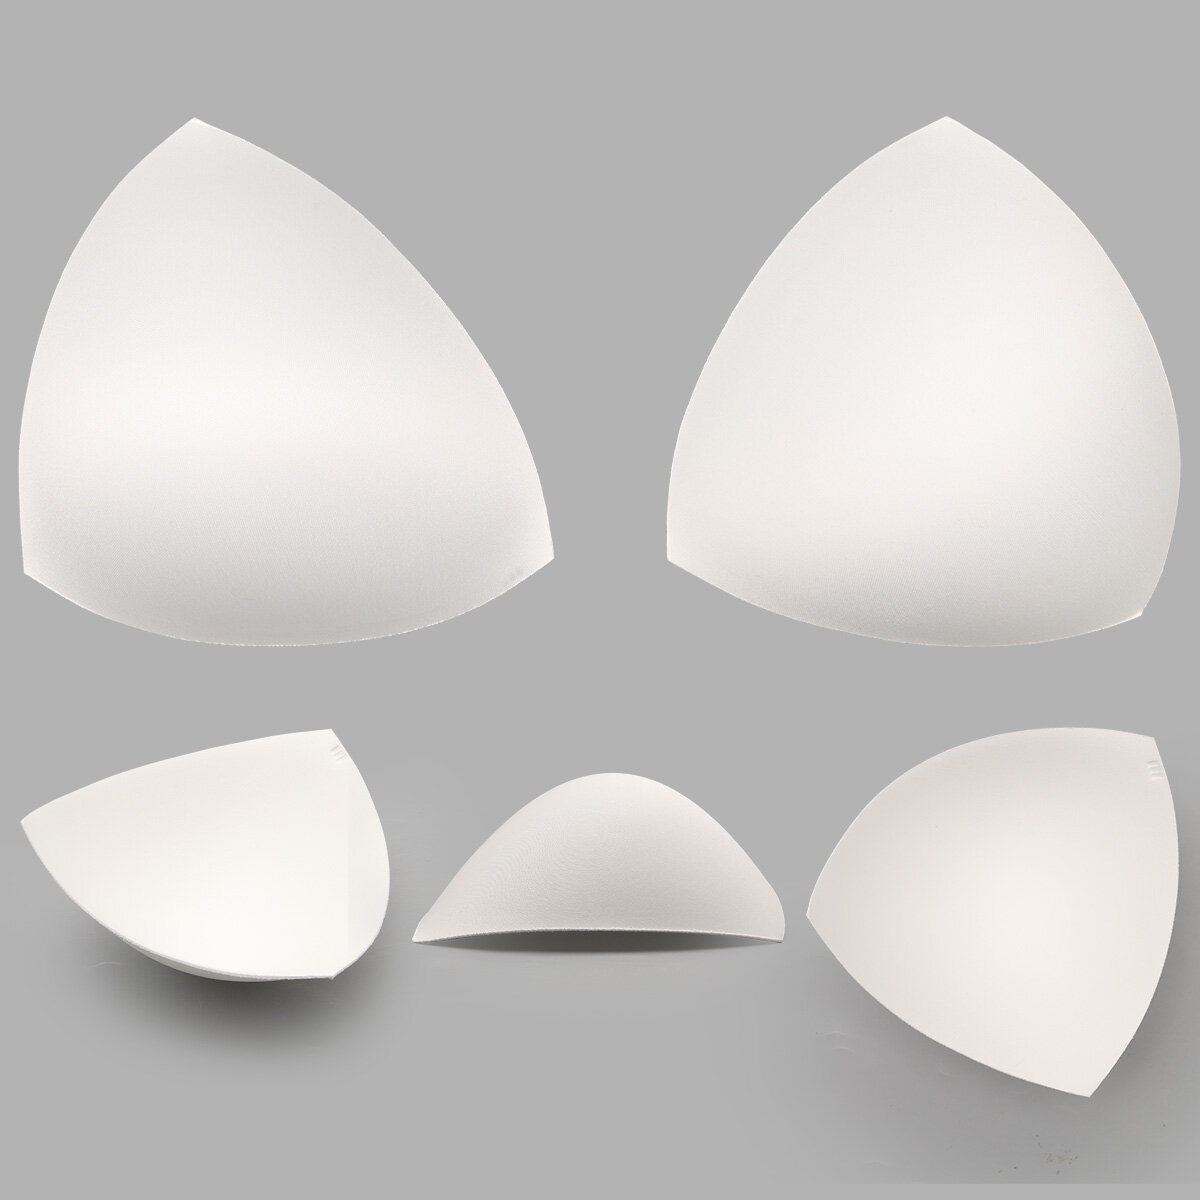 Чашечки корсетные для купальников Antynea, треугольные, без уступа, с равномерным наполнением, FN-20, размер 3 (100-105) (приглушенный белый), 1 пара